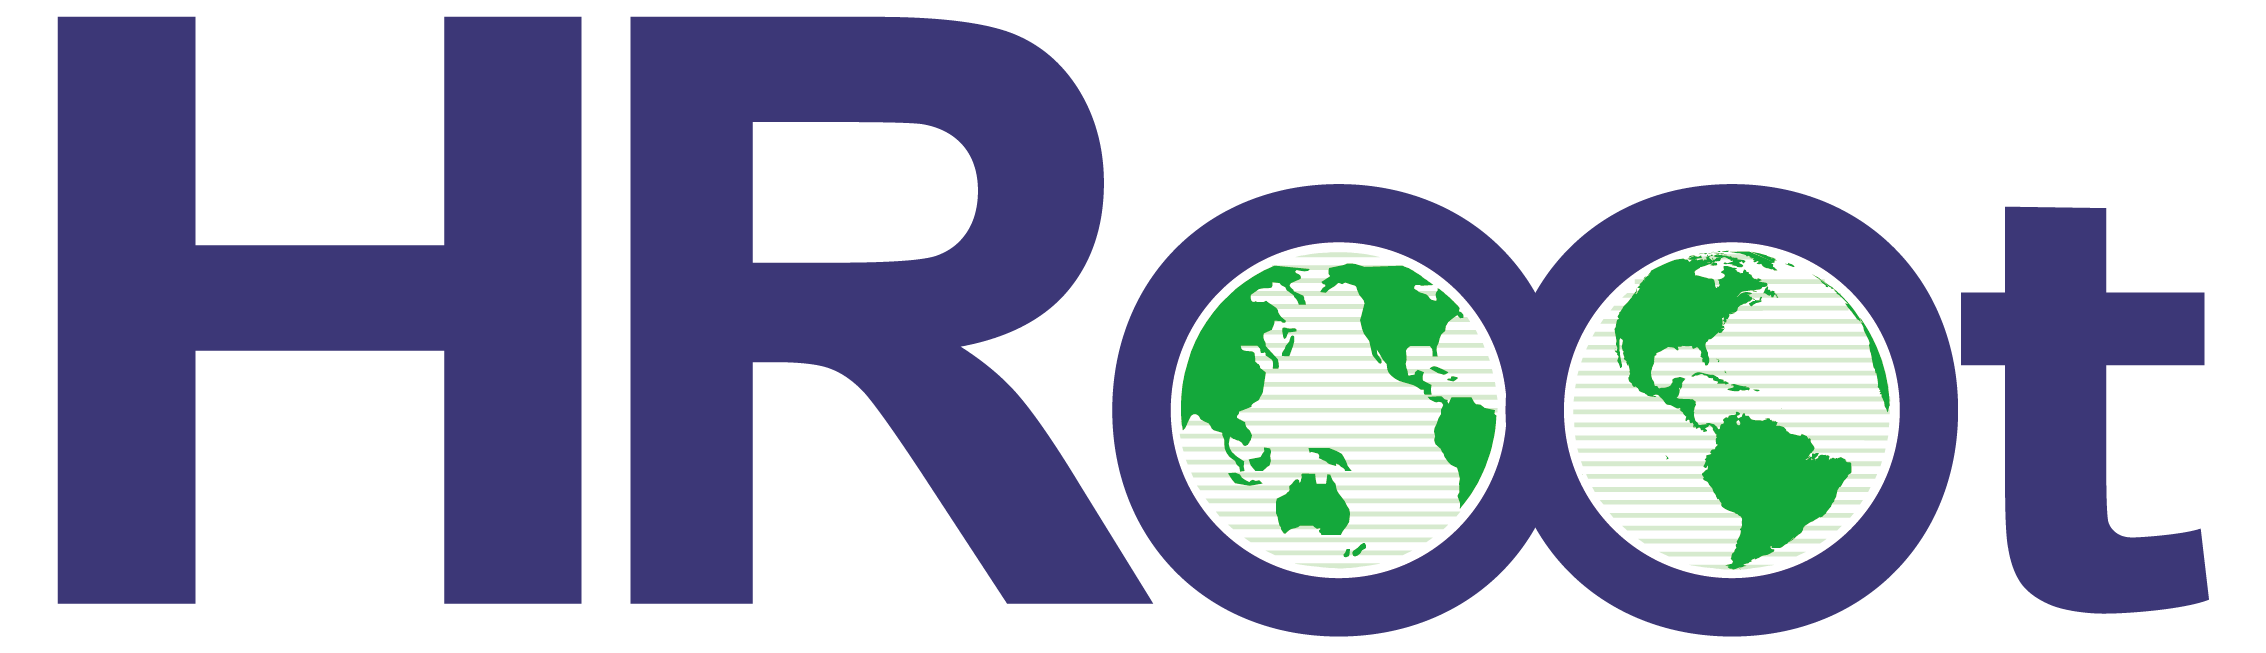 HRoot logo1632905498.png